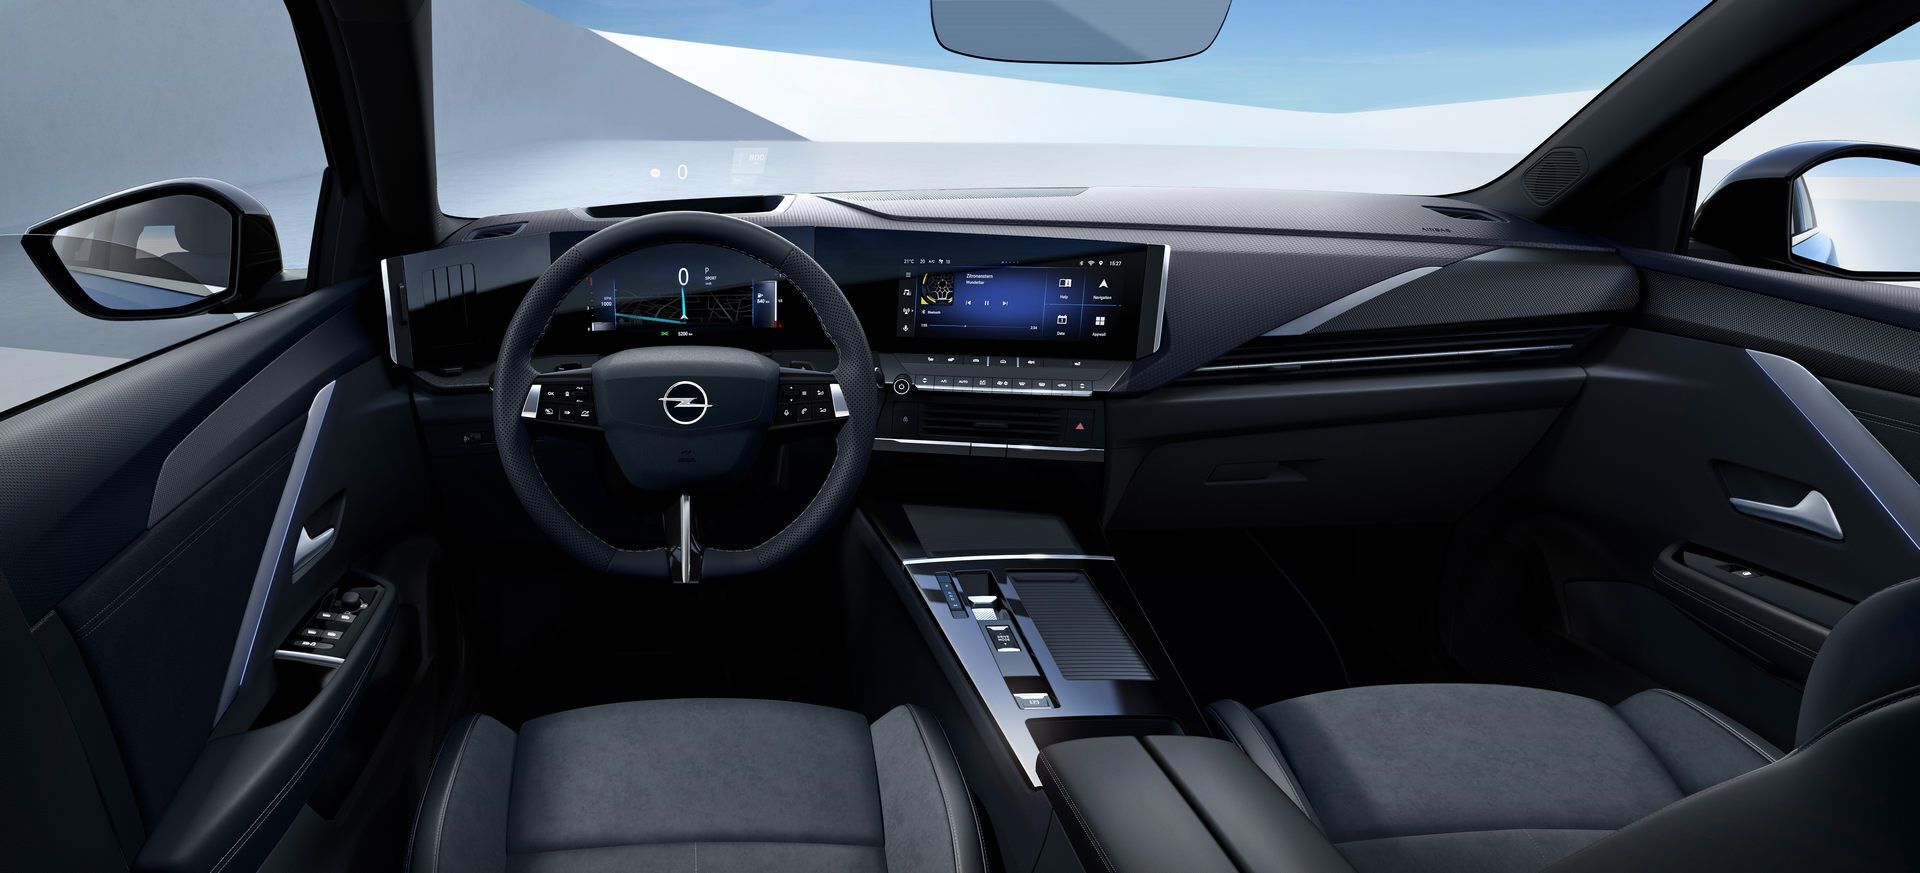 У салоні автомобіля використовується повністю цифровий кокпіт Pure Panel із двома 10-дюймовими екранами